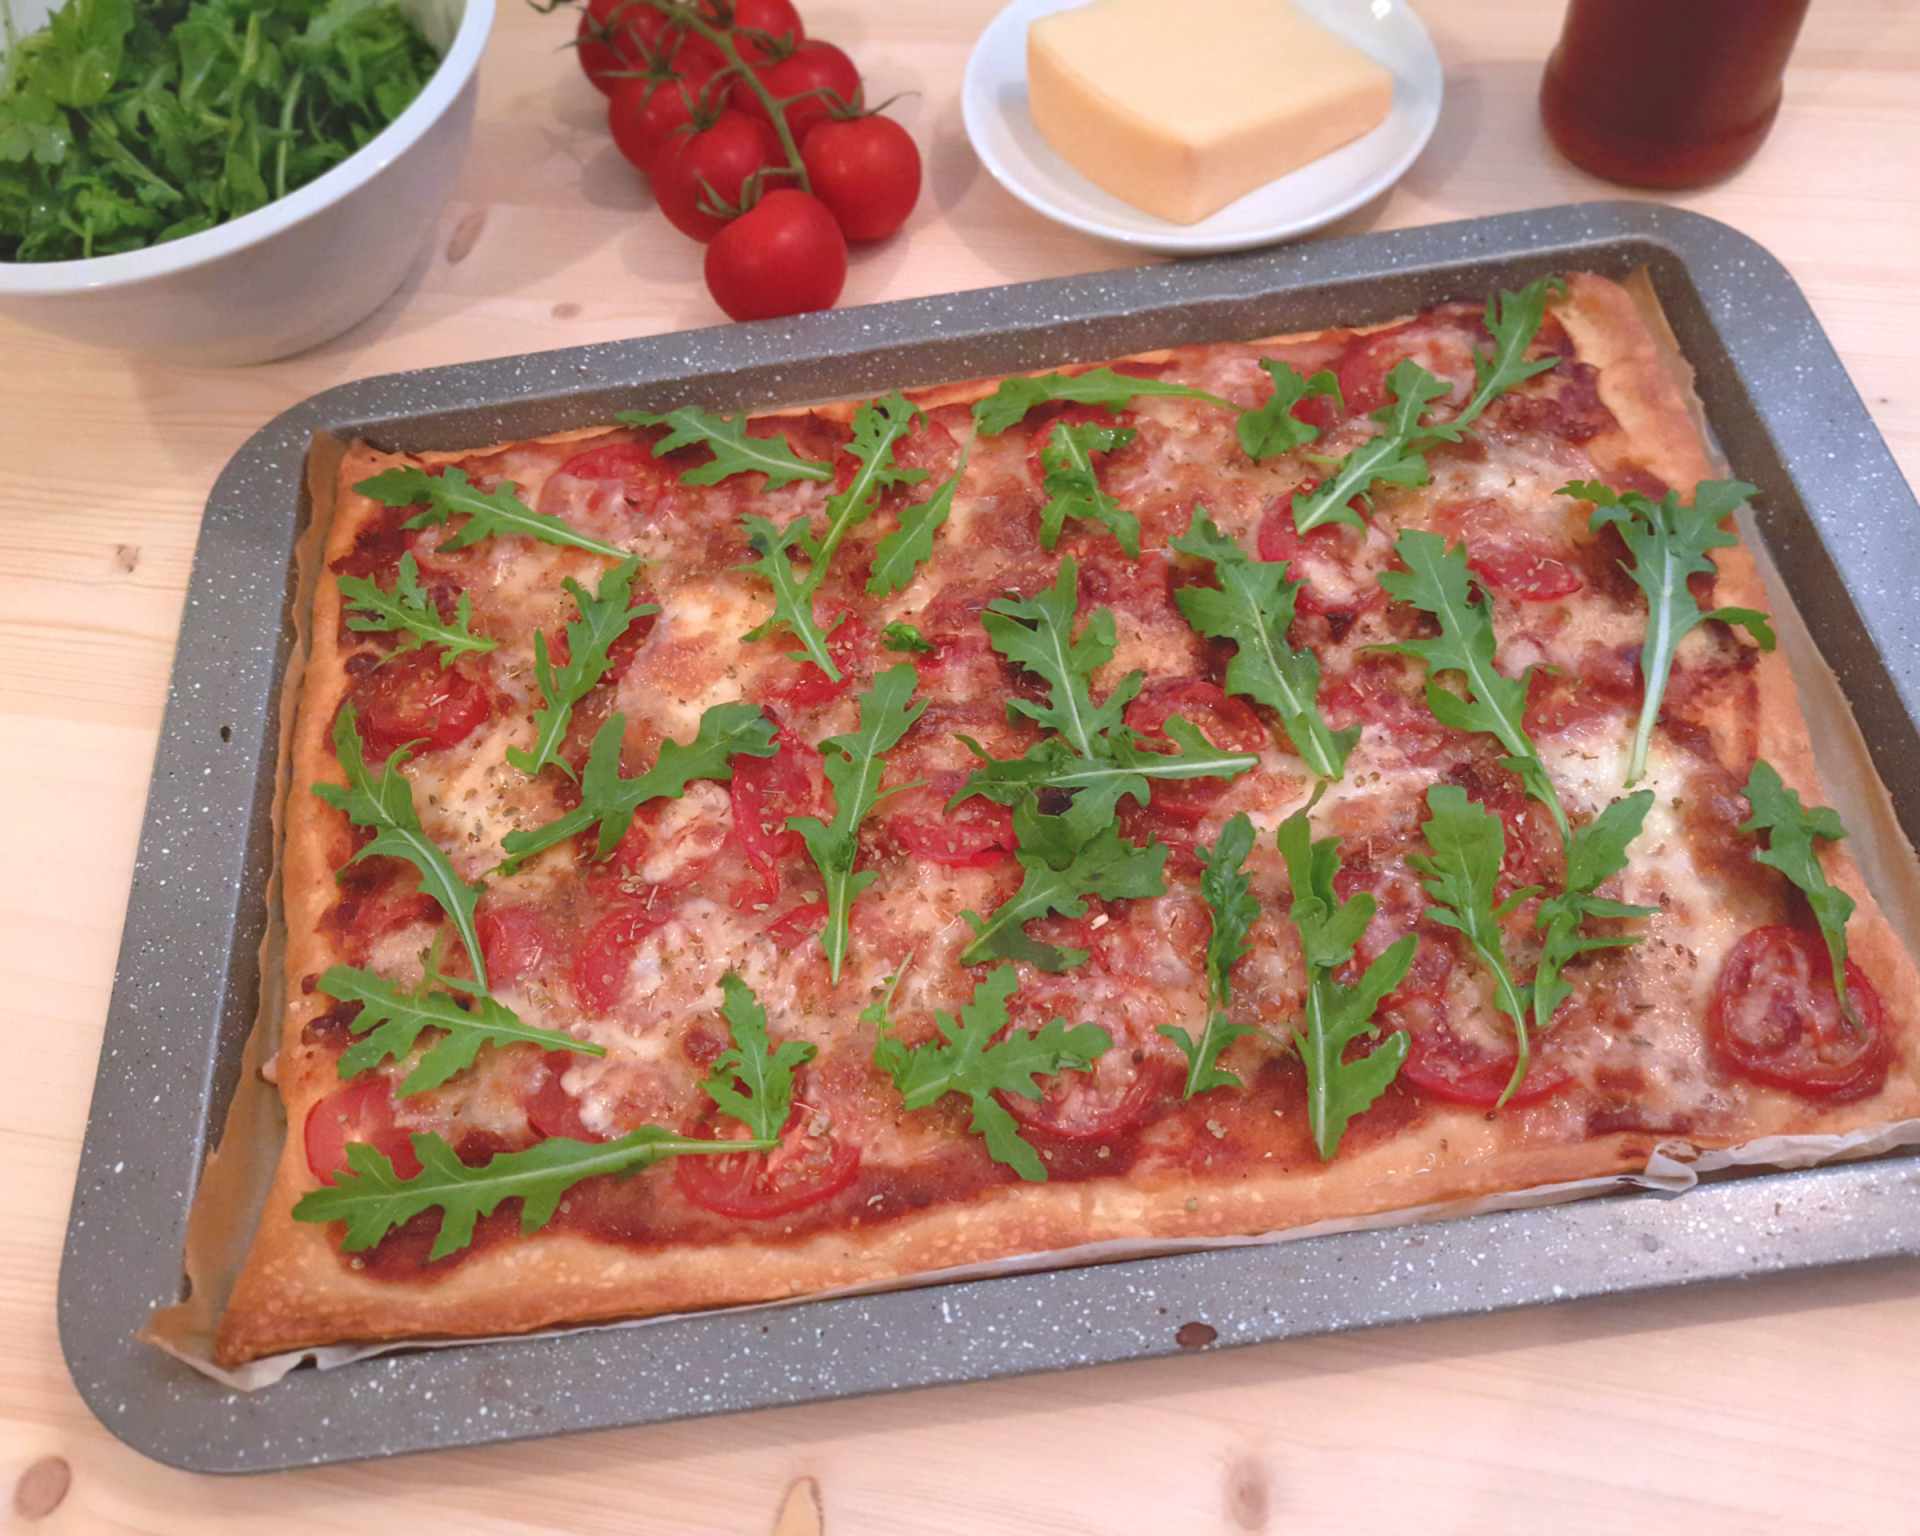 Plech s pizzou s paradajkovým základom, na vrchu paradajky, mozzarella a na upečenej pizzi čerstvá rukola